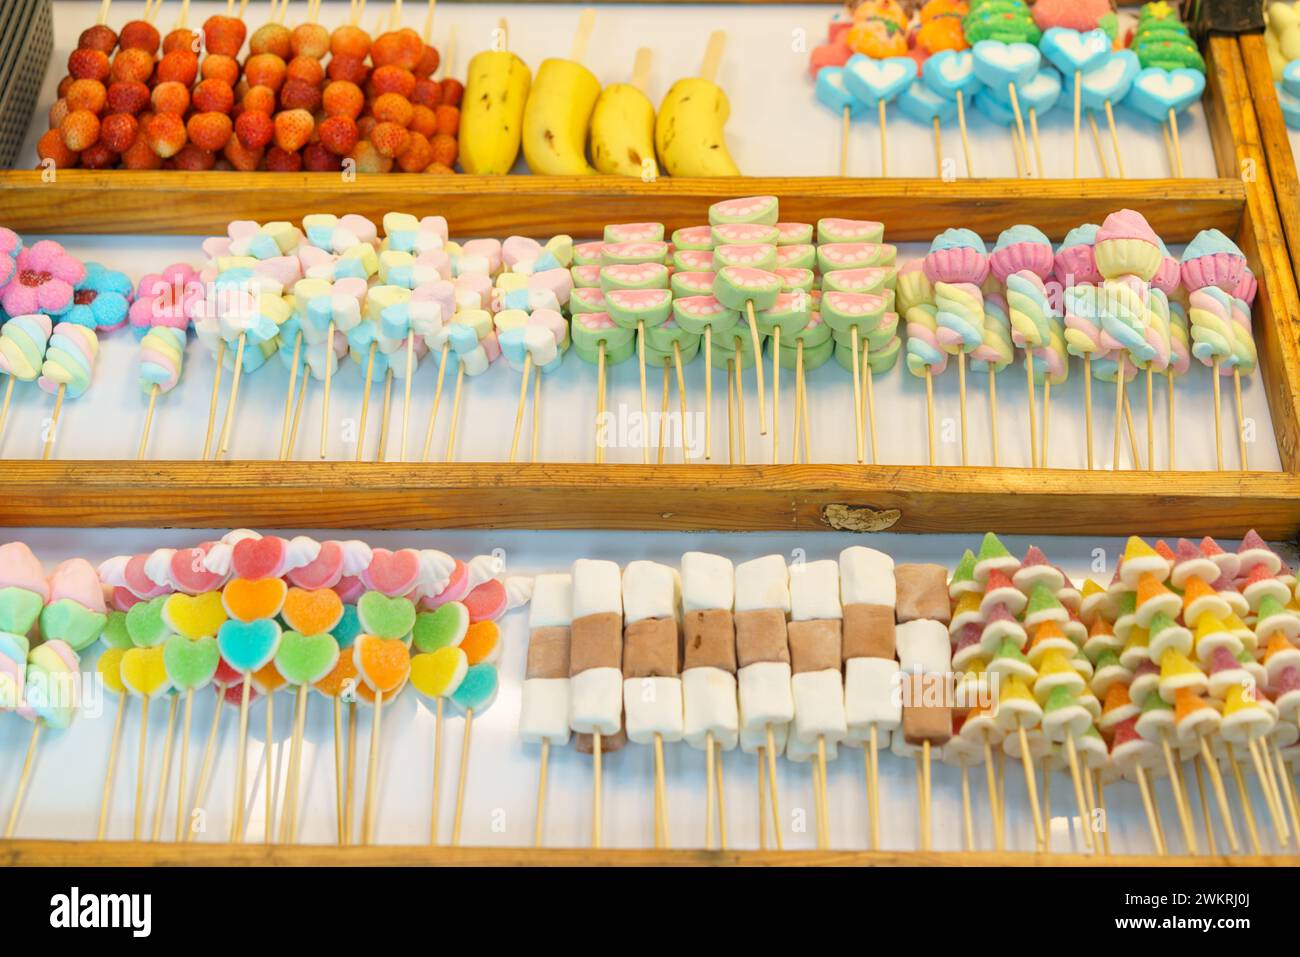 Una deliziosa selezione di coloratissimi spiedini di caramelle, tra cui marshmallow e caramelle in gelatina, esposti in un bancone del mercato in vendita Foto Stock